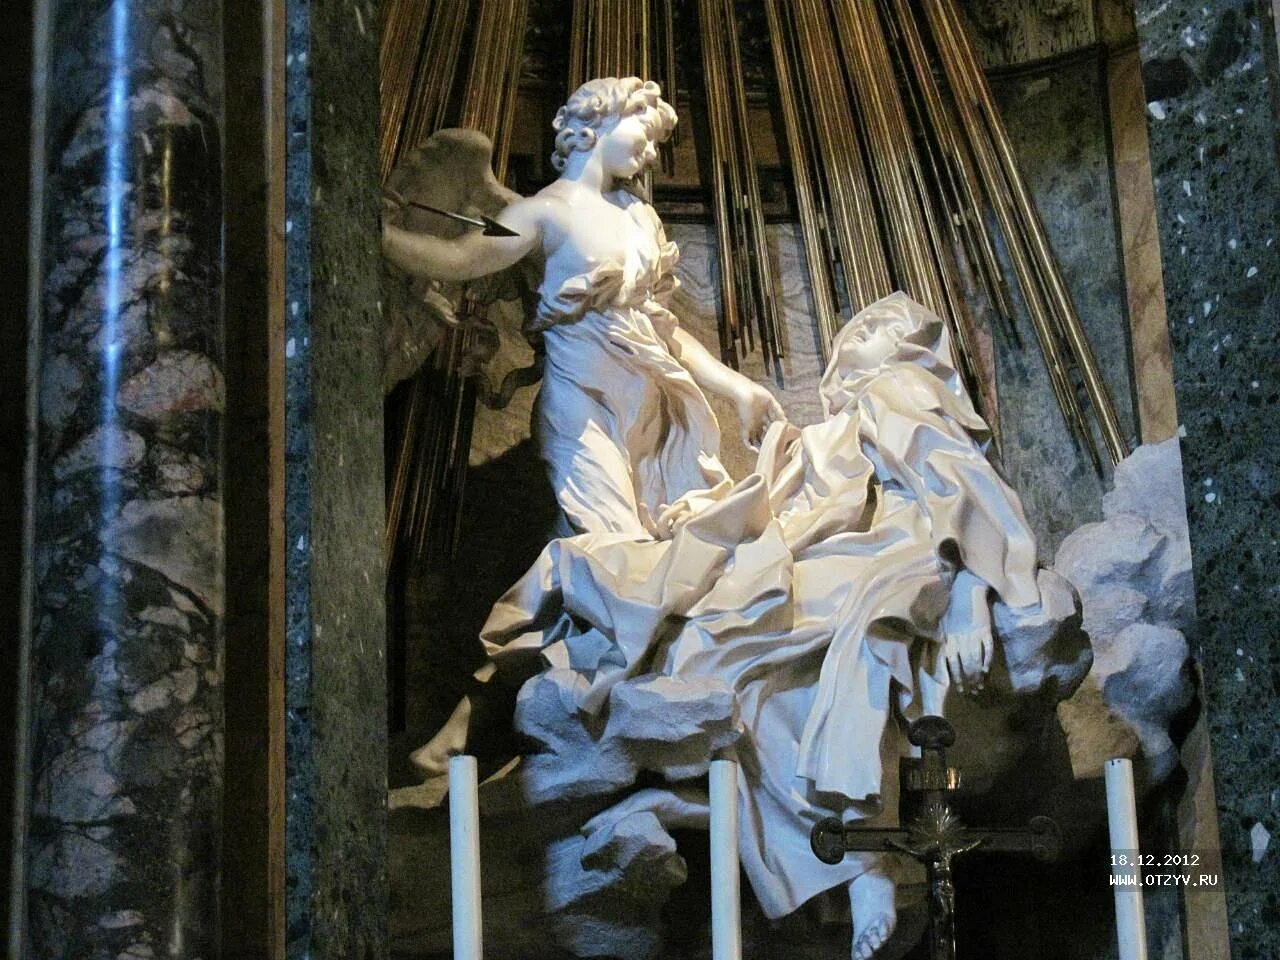 Скульптура Бернини экстаз Святой Терезы. Джованни Лоренцо Бернини экстаз Святой Терезы. Джан Лоренцо Бернини “экстаз Святой Терезы” (1645-1652).